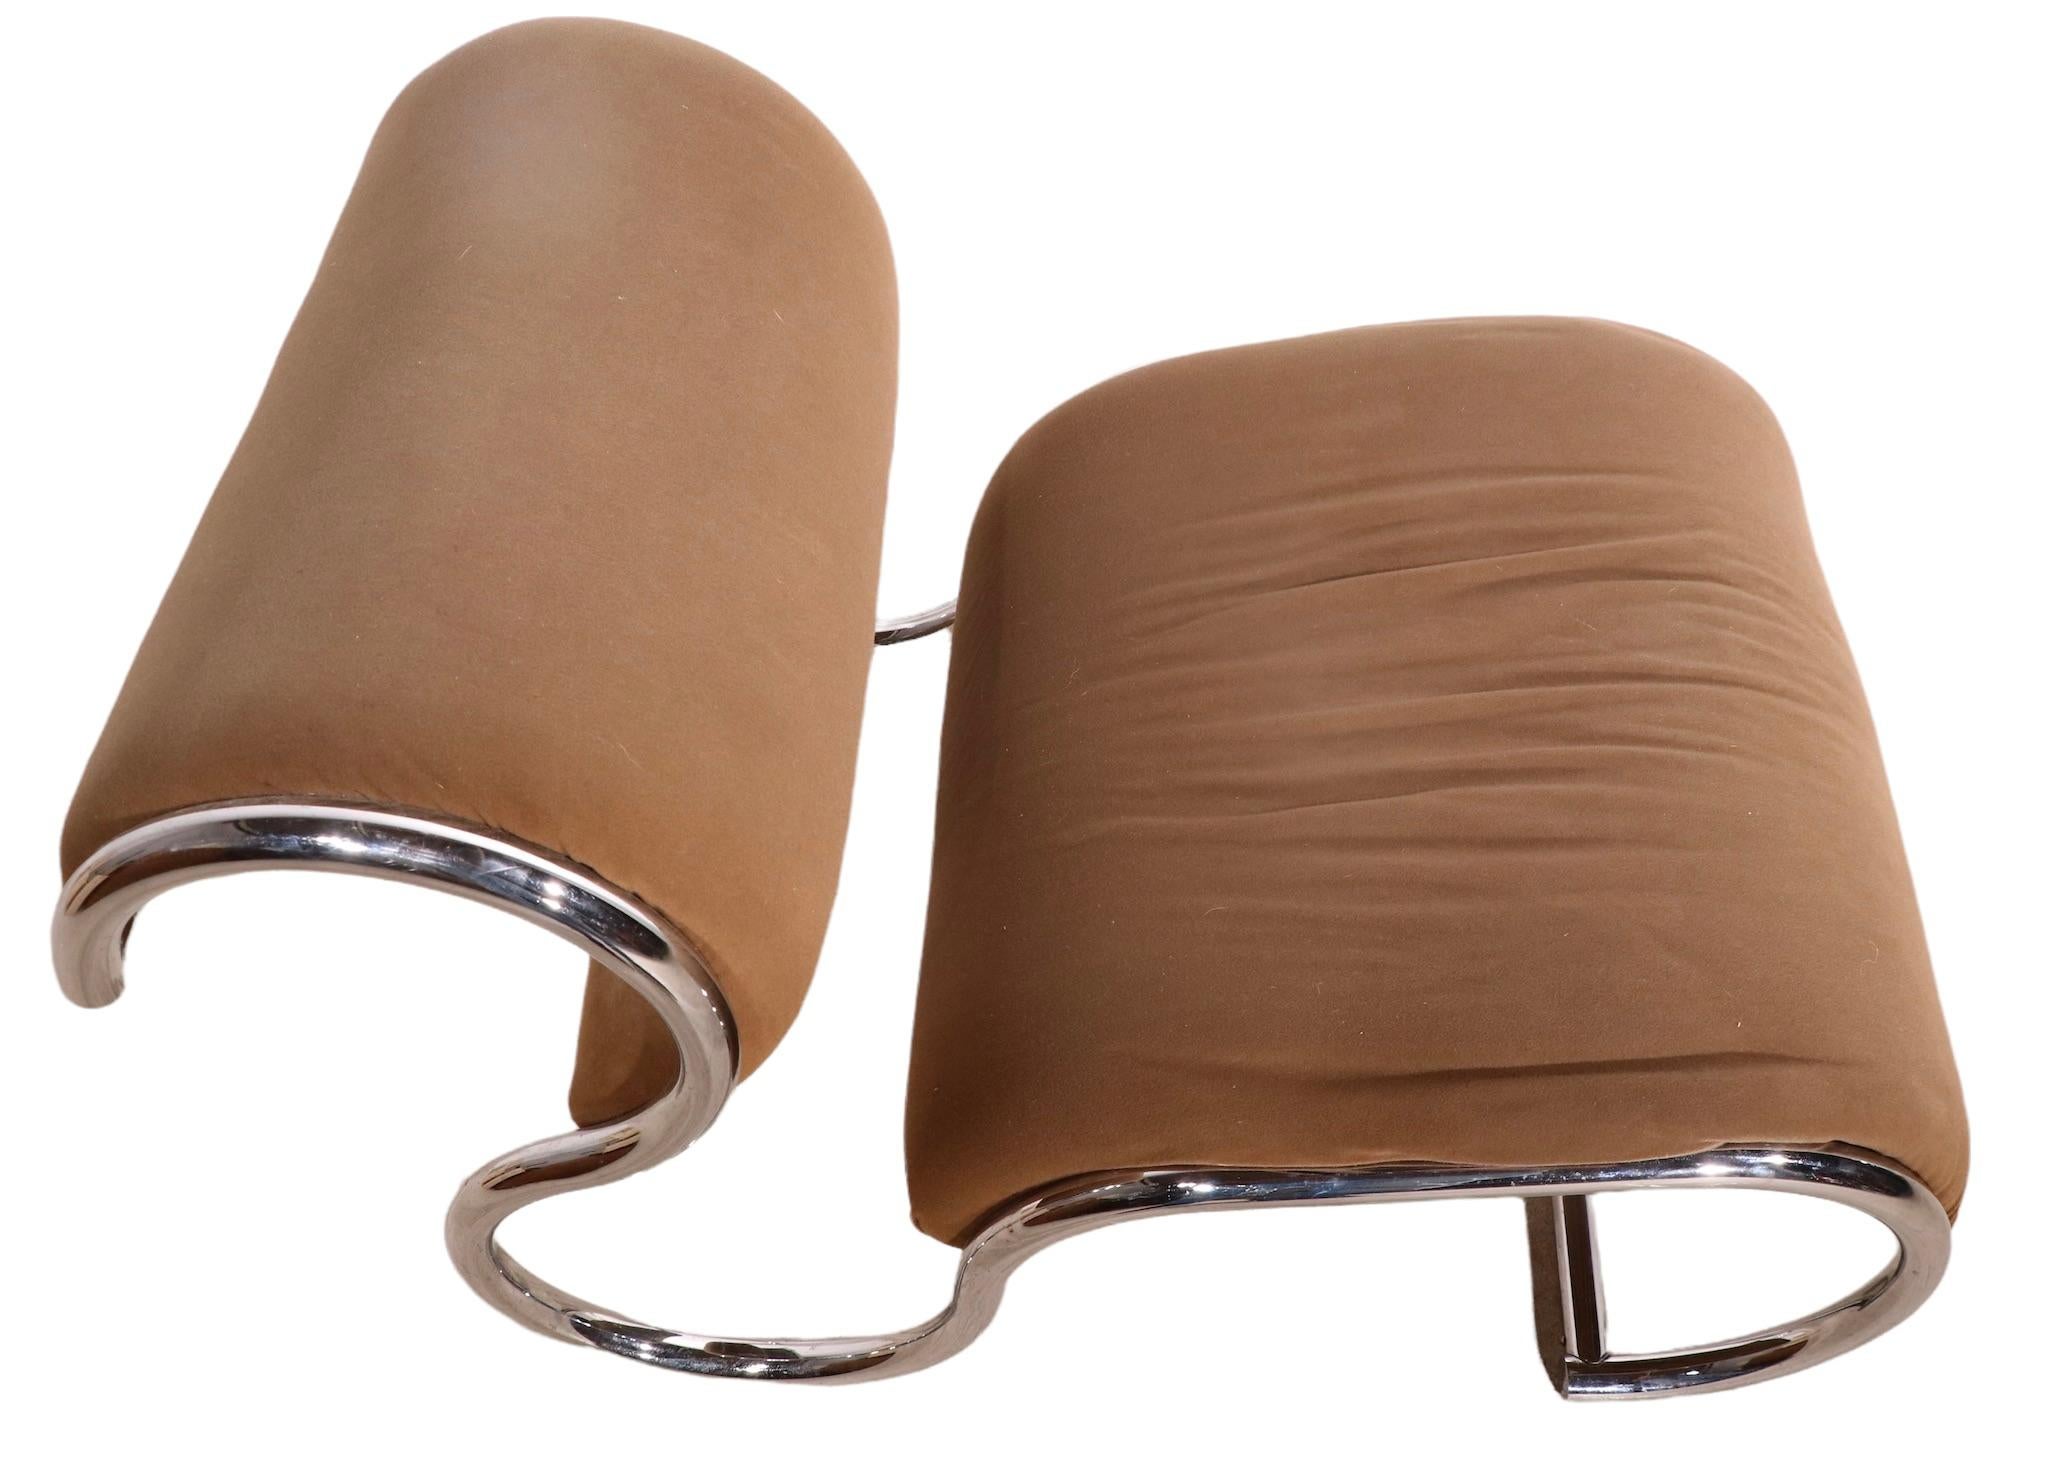 Chaise de salon High Post Modern tubulaire chromée, chaise de salon, ayant un cadre tubulaire sculptural, avec siège et support de dossier rembourrés. La chaise est en bon état, d'origine, elle montre une certaine usure cosmétique du tissu, et est